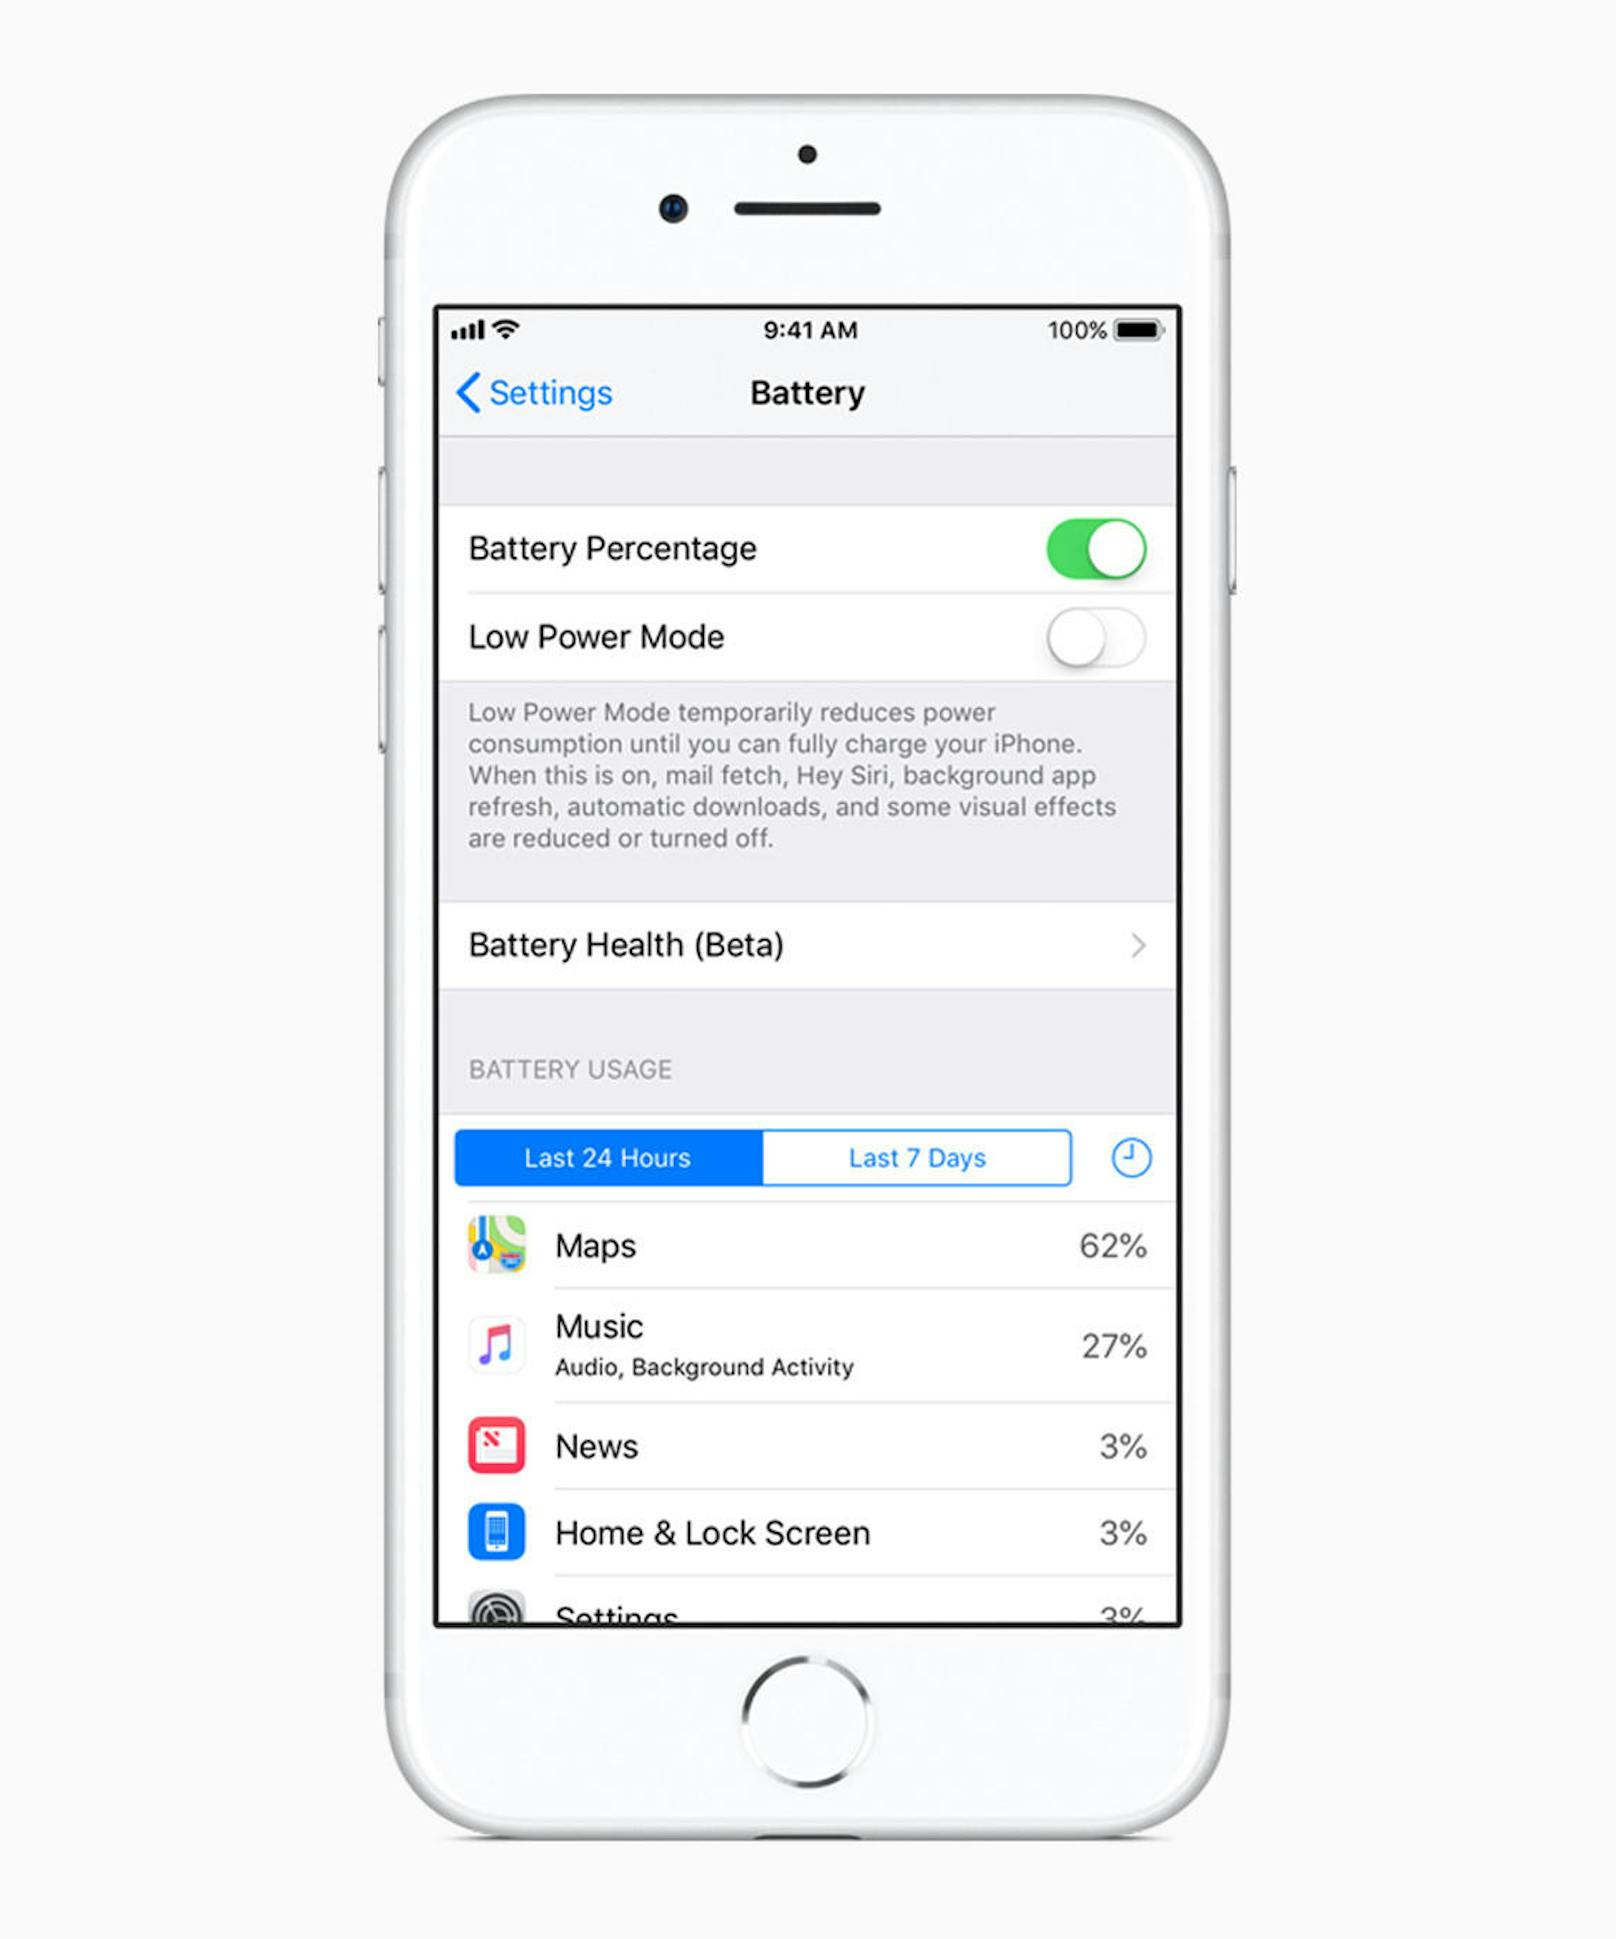 <b>01. April 2018:</b> iOS 11.3 fügt neue Funktionen hinzu, um den Batteriezustand eines iPhones anzuzeigen und zu empfehlen, wenn eine Batterie gewartet werden muss. Diese findet man unter Einstellungen -> Batterie und sind ab iPhone 6 verfügbar. Zusätzlich können Anwender nun sehen, ob die in iOS 10.2.1 eingeführte Power-Management-Funktion, die die maximale Leistung dynamisch verwaltet, um unerwartete Abschaltungen zu verhindern, aktiviert ist und auswählen, ob diese abgeschaltet werden soll.